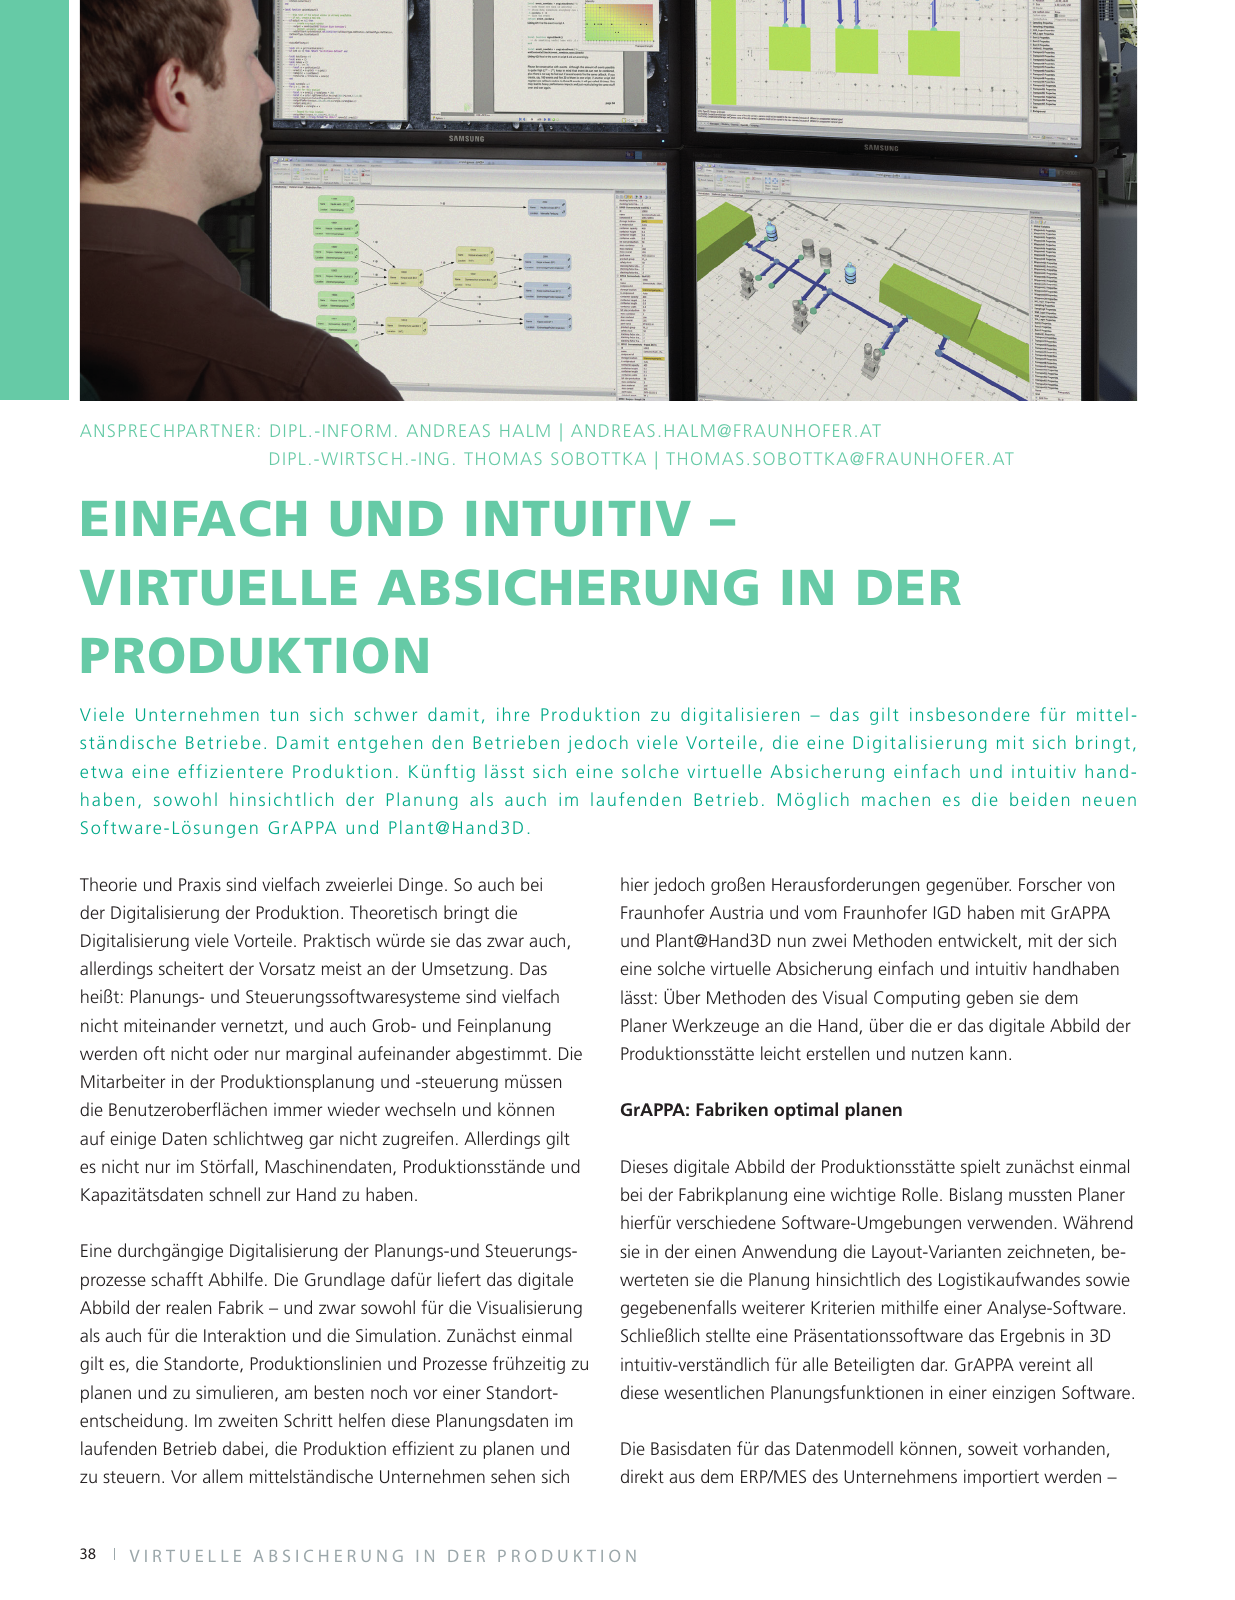 Vorschau Fraunhofer Austria Jahresbericht 2016/17 Seite 40